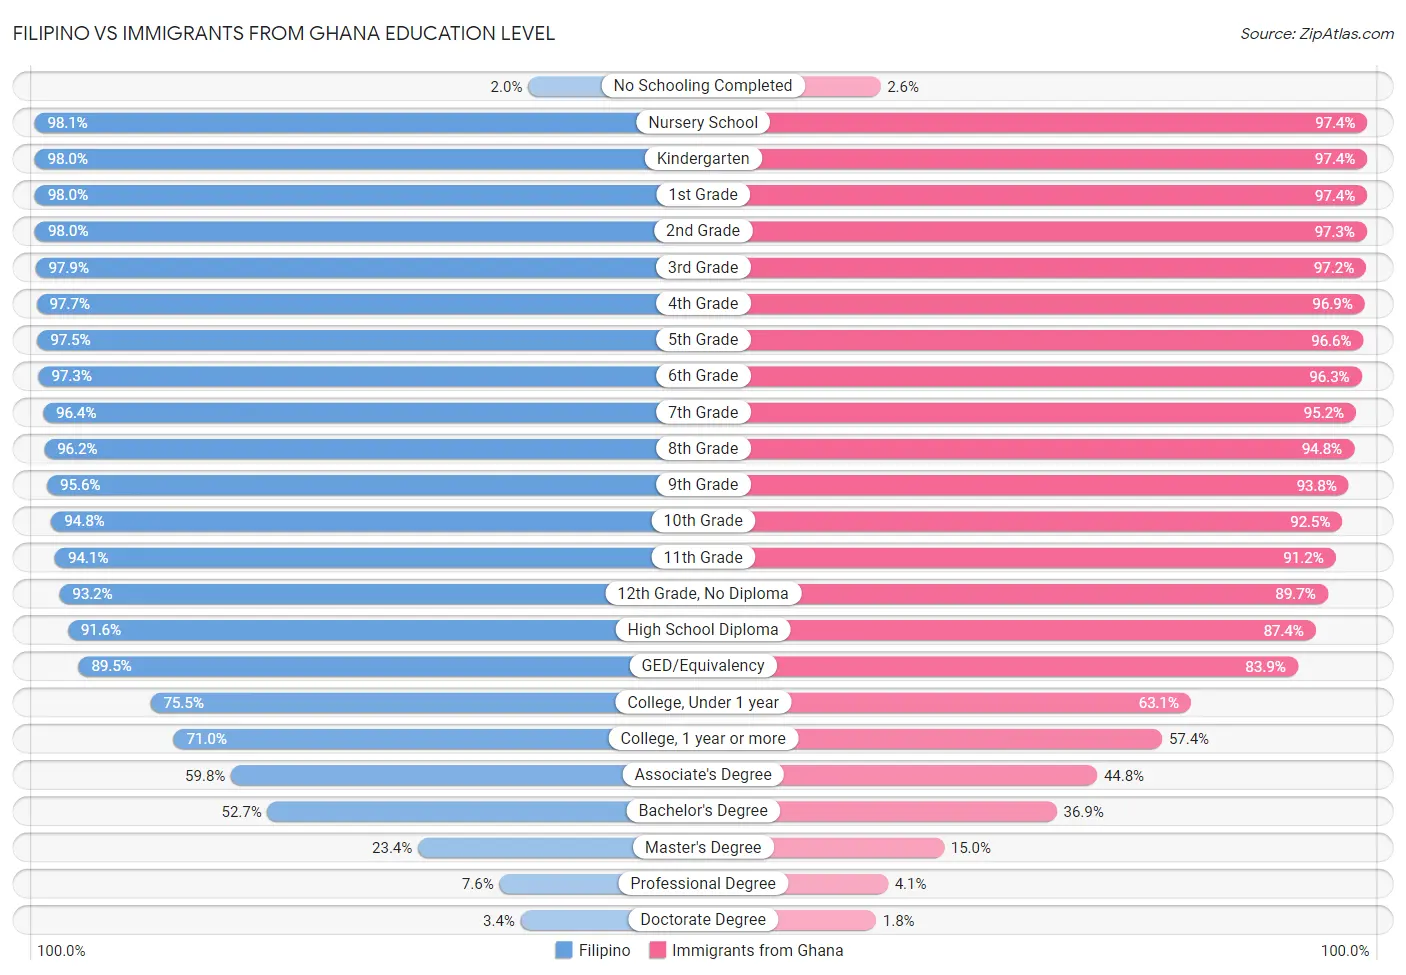 Filipino vs Immigrants from Ghana Education Level